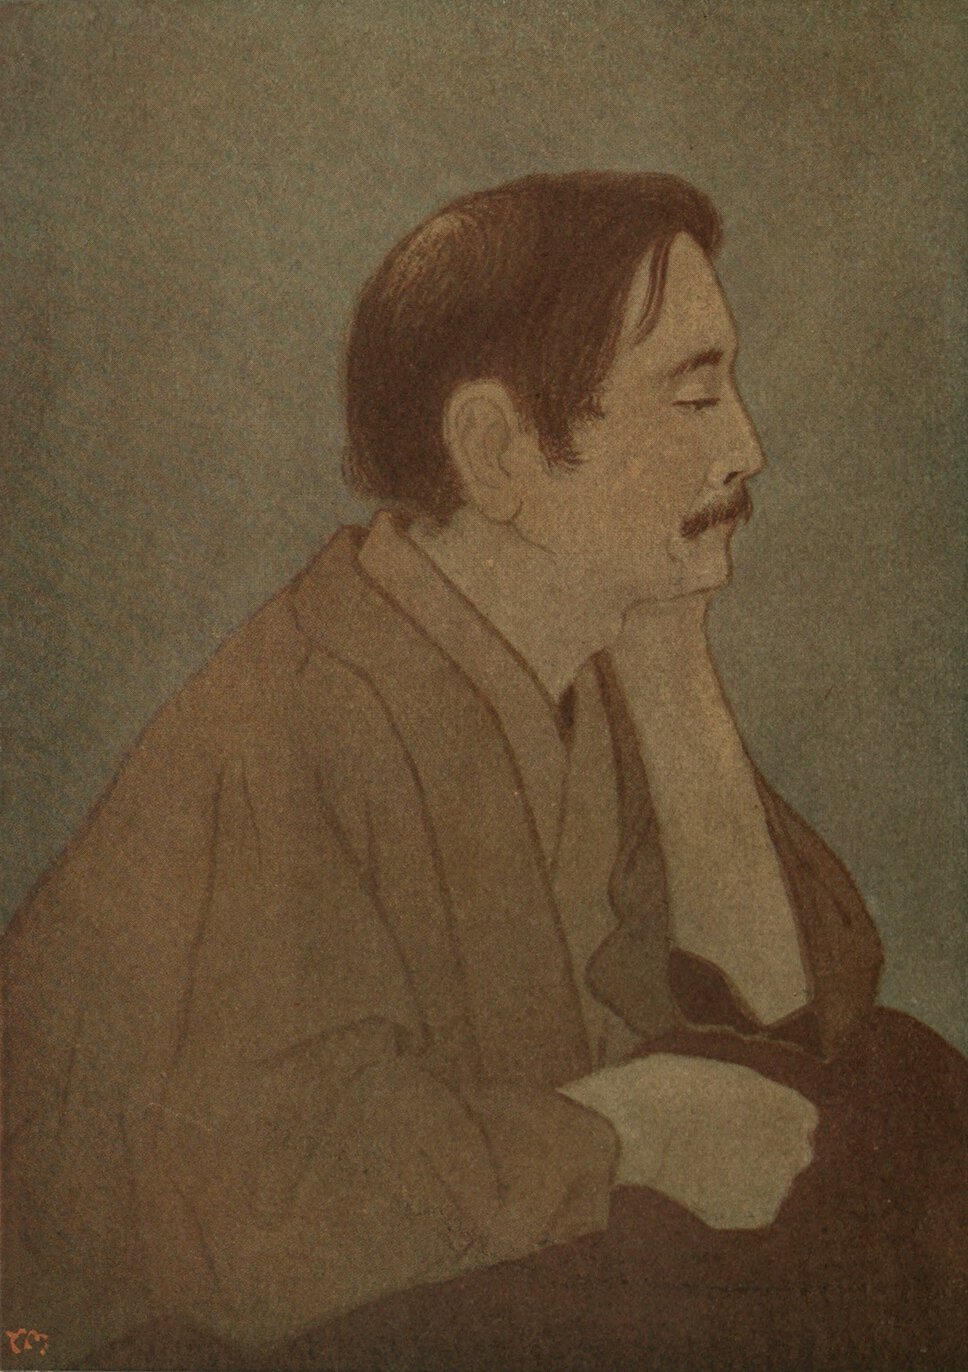 Head and shoulders portrait of Yone Noguchi in half profile, facing left.